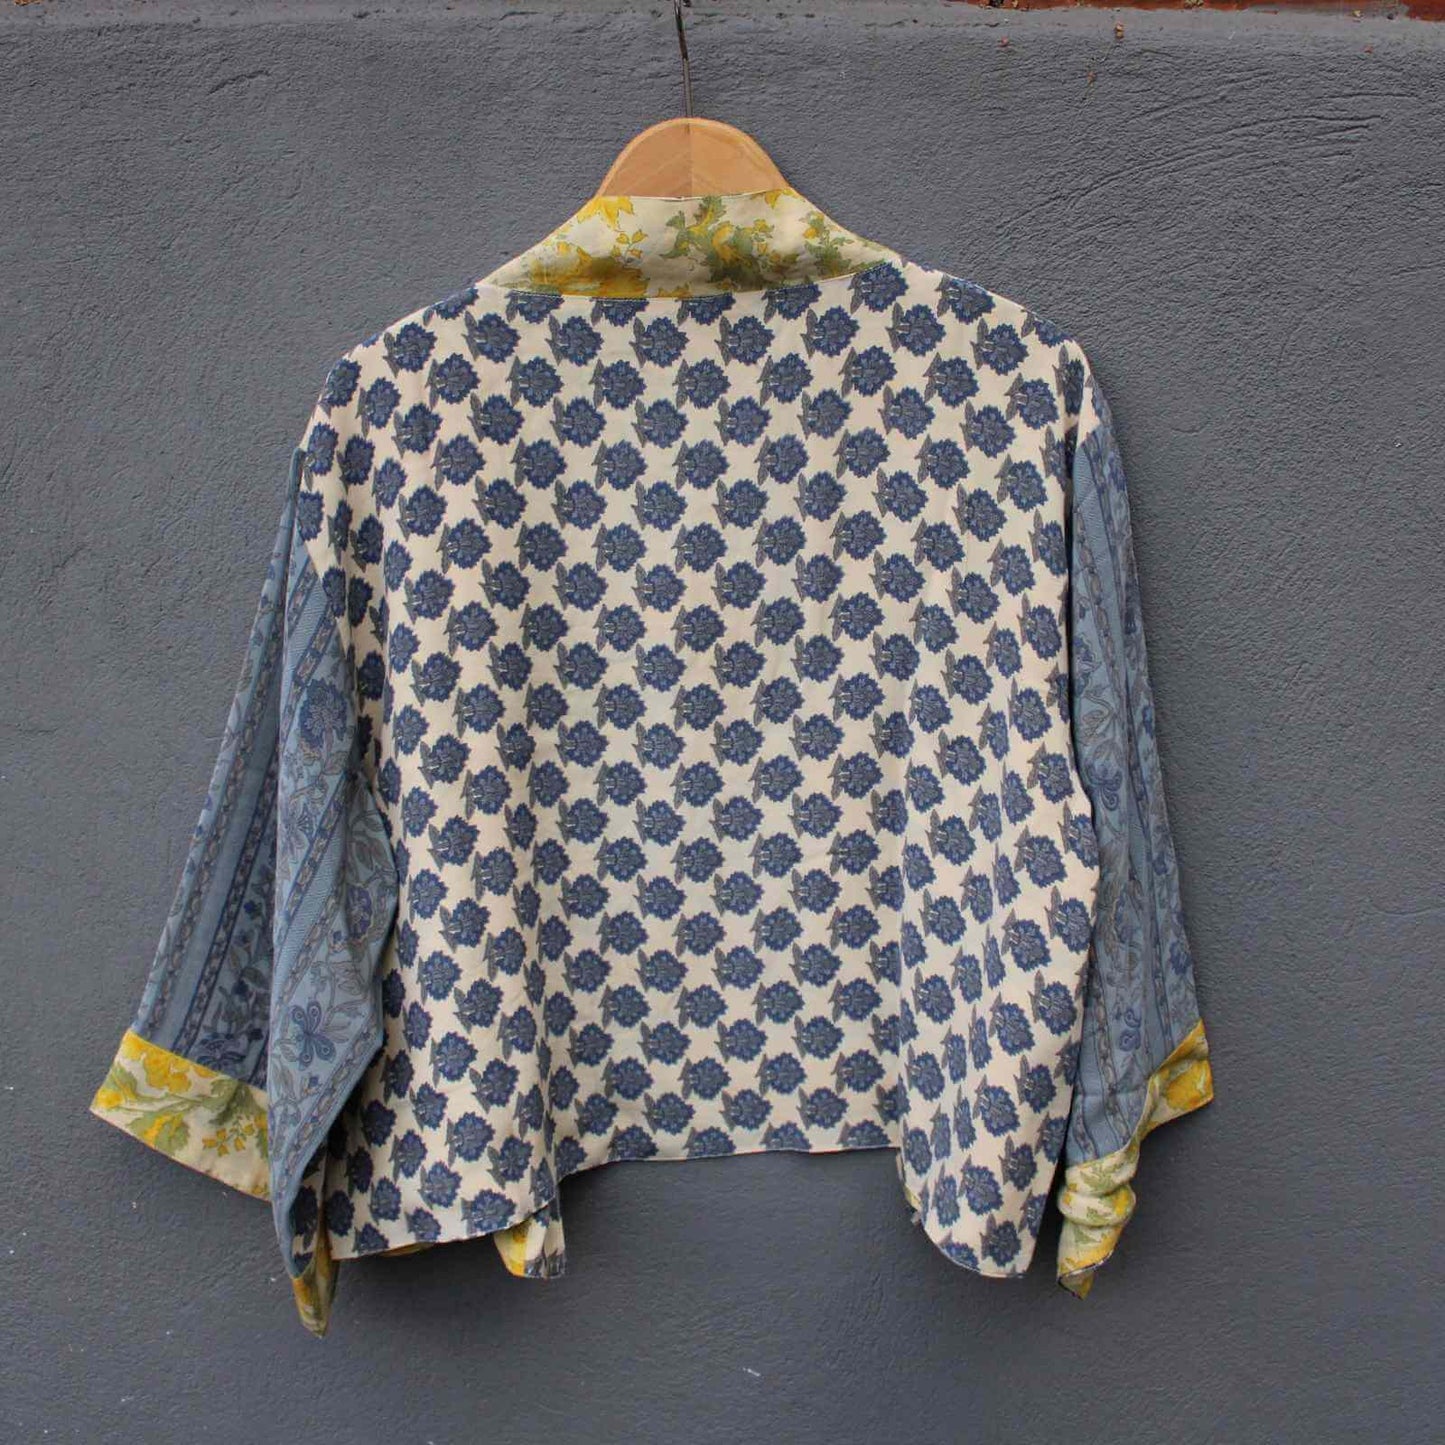 Grå ryg på gul og ryg silke vendbar jakke fra Cofur fra Anbi